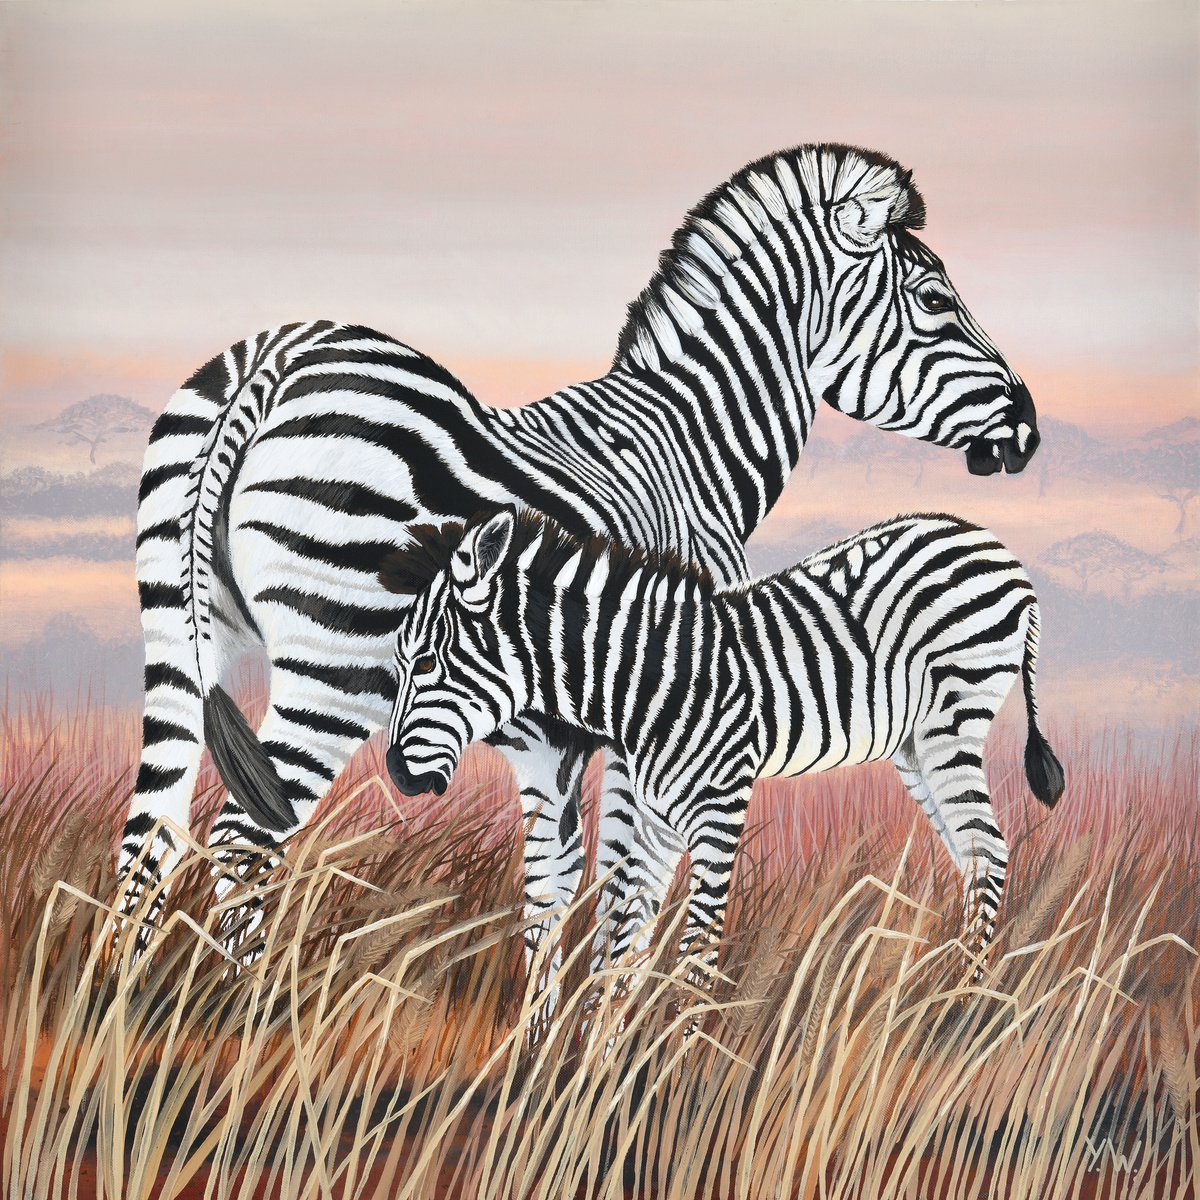 Zebra and Colt by Yvonne B Webb